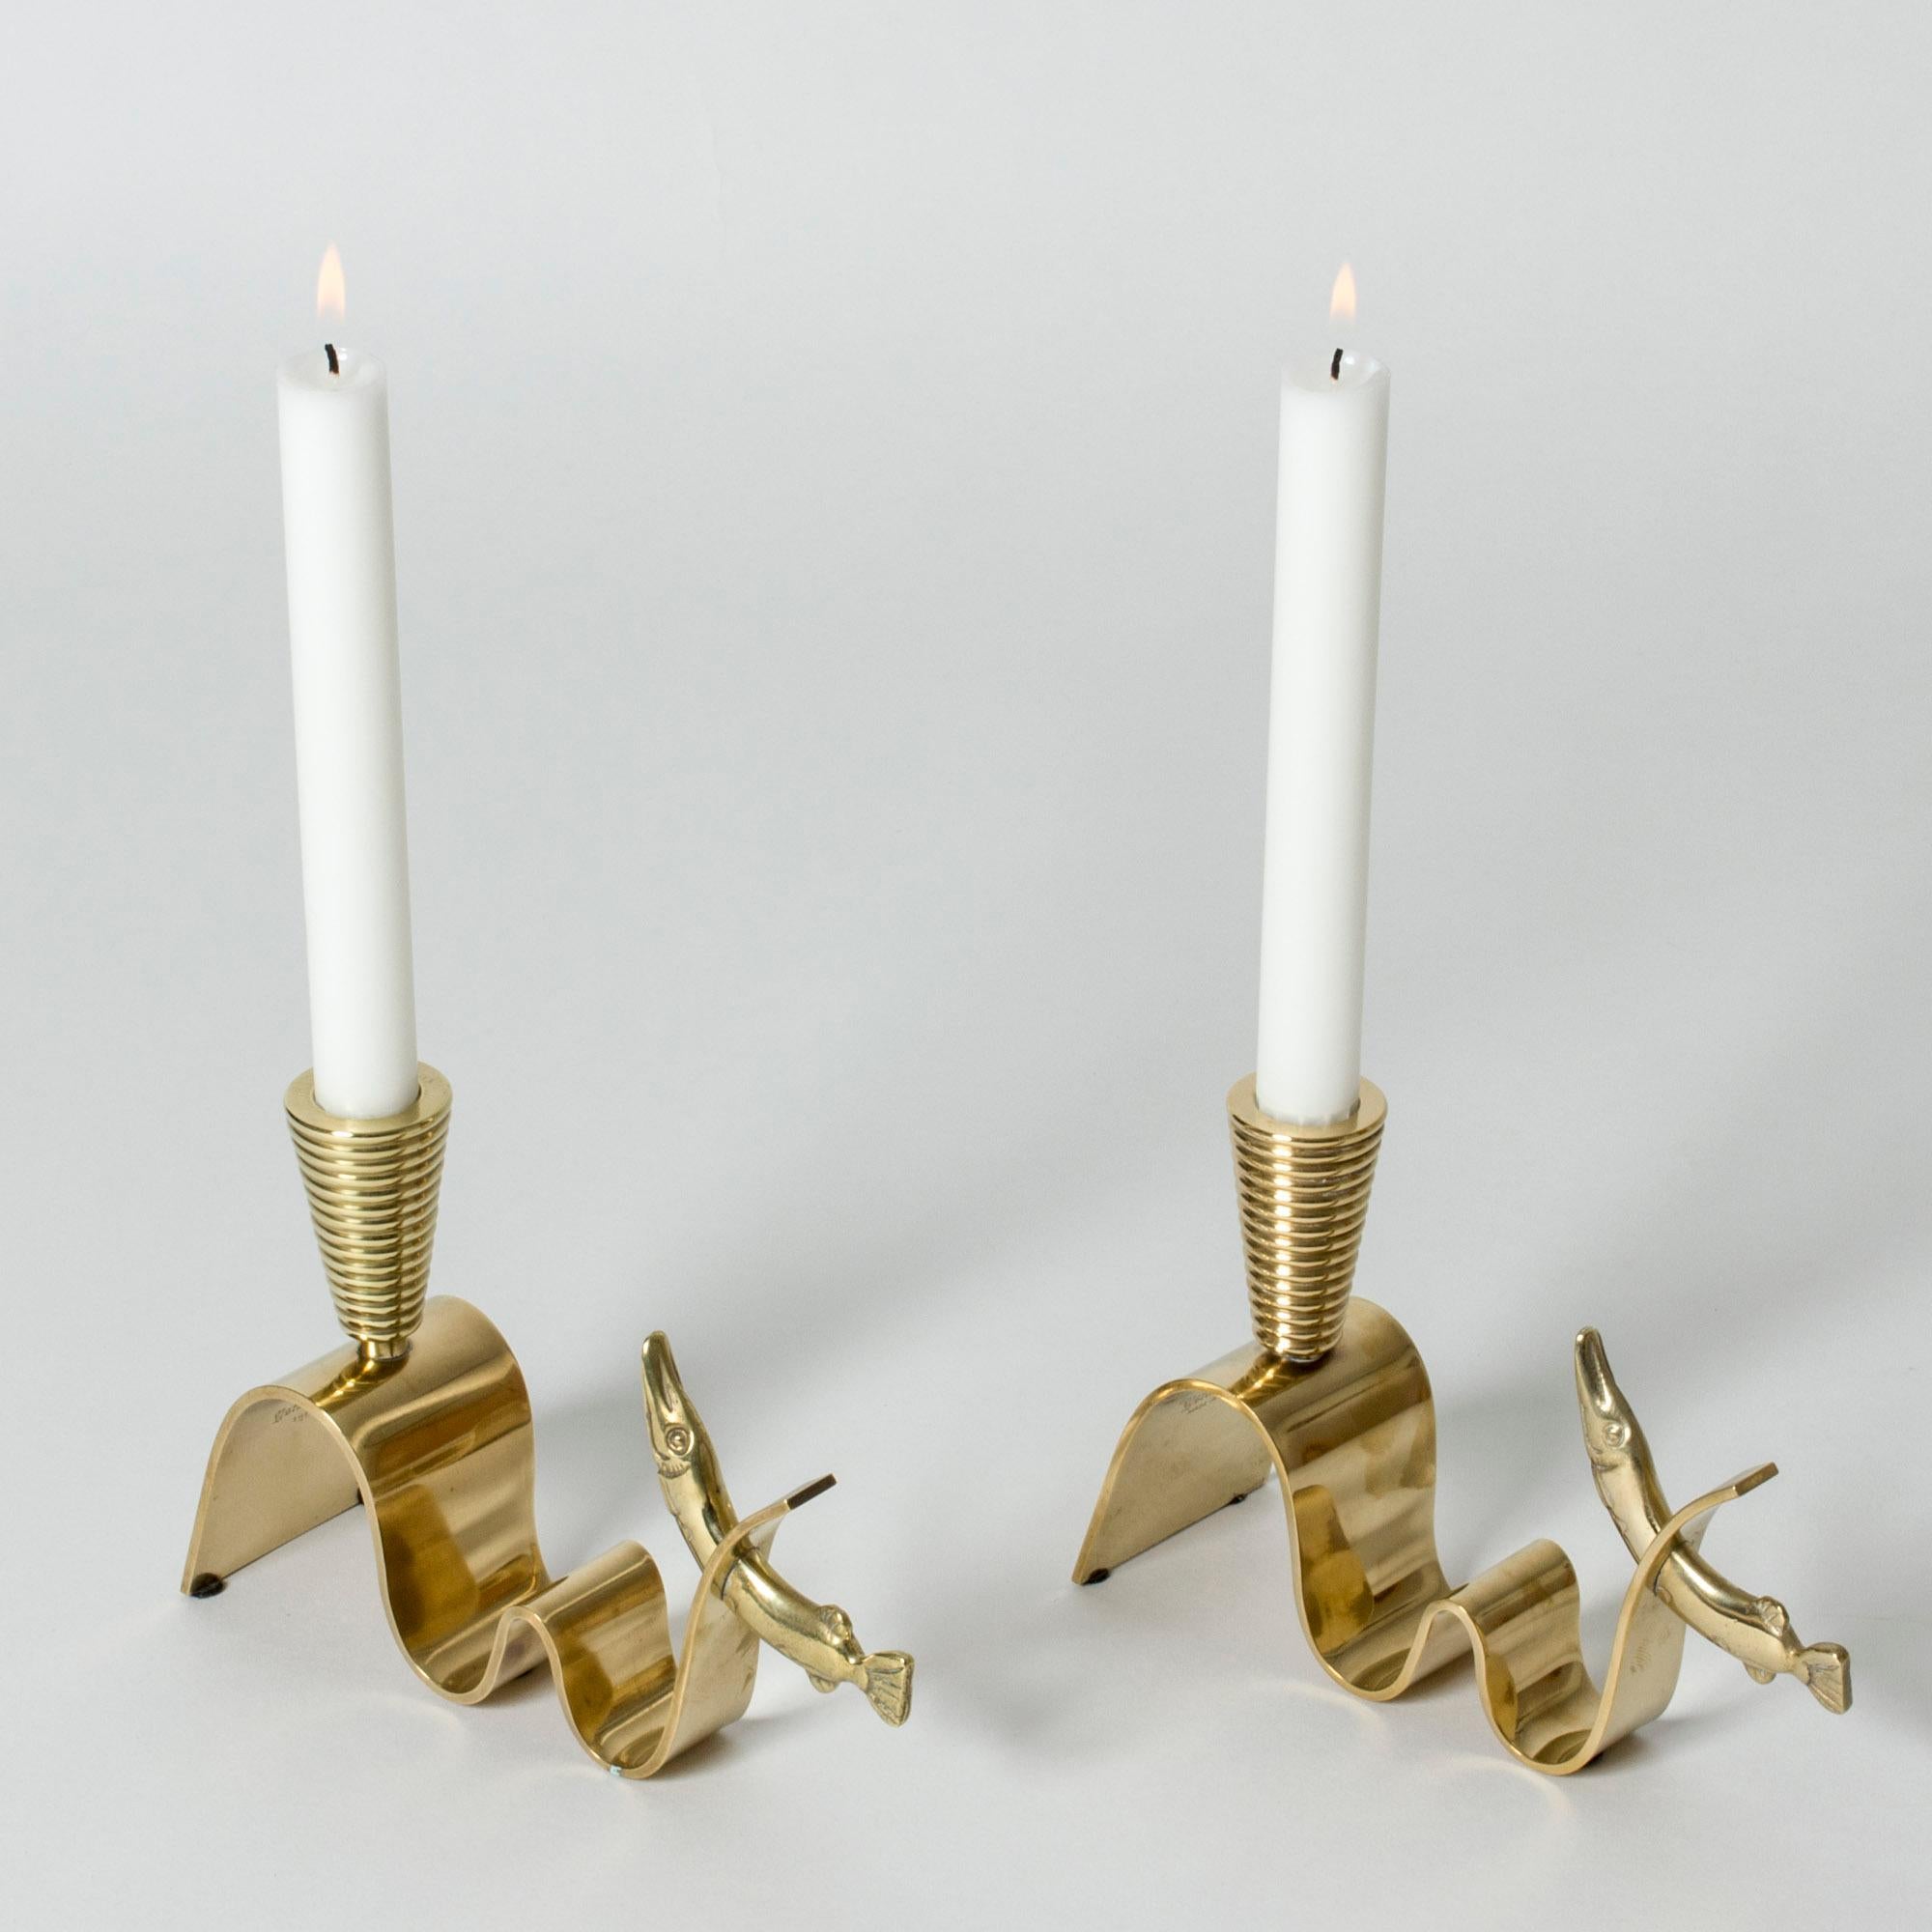 Scandinavian Modern Pair of Brass Candlesticks by Carl-Einar Borgström, Ystad Metall, Sweden, 1940s